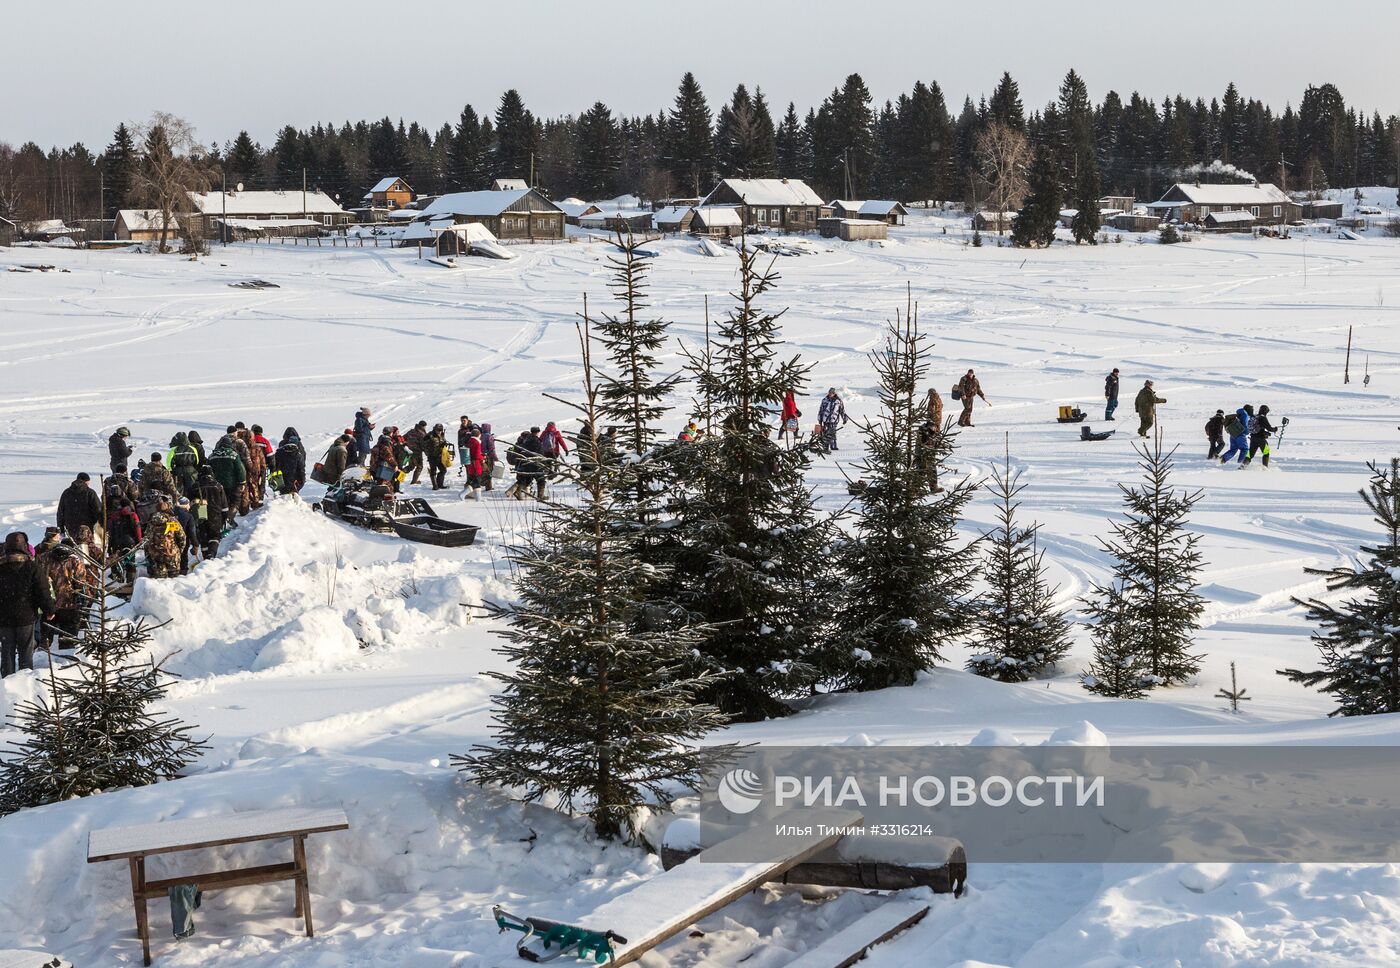 Рыболовный фестиваль "Пудожские налимы" в национальном парке "Водлозерский"